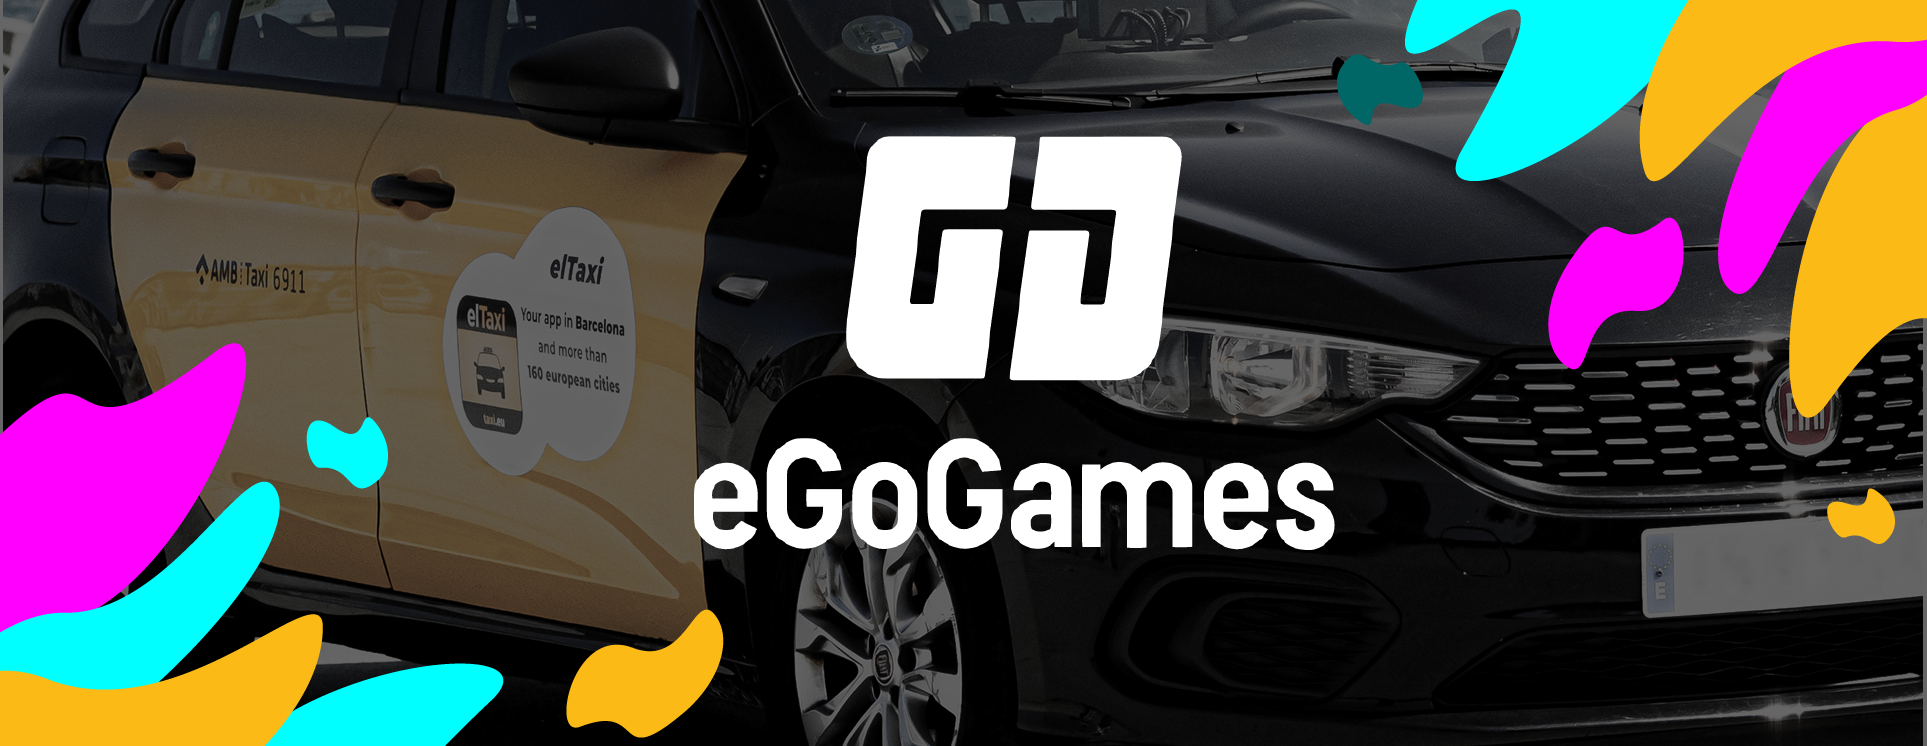 Egogames- app_taxi